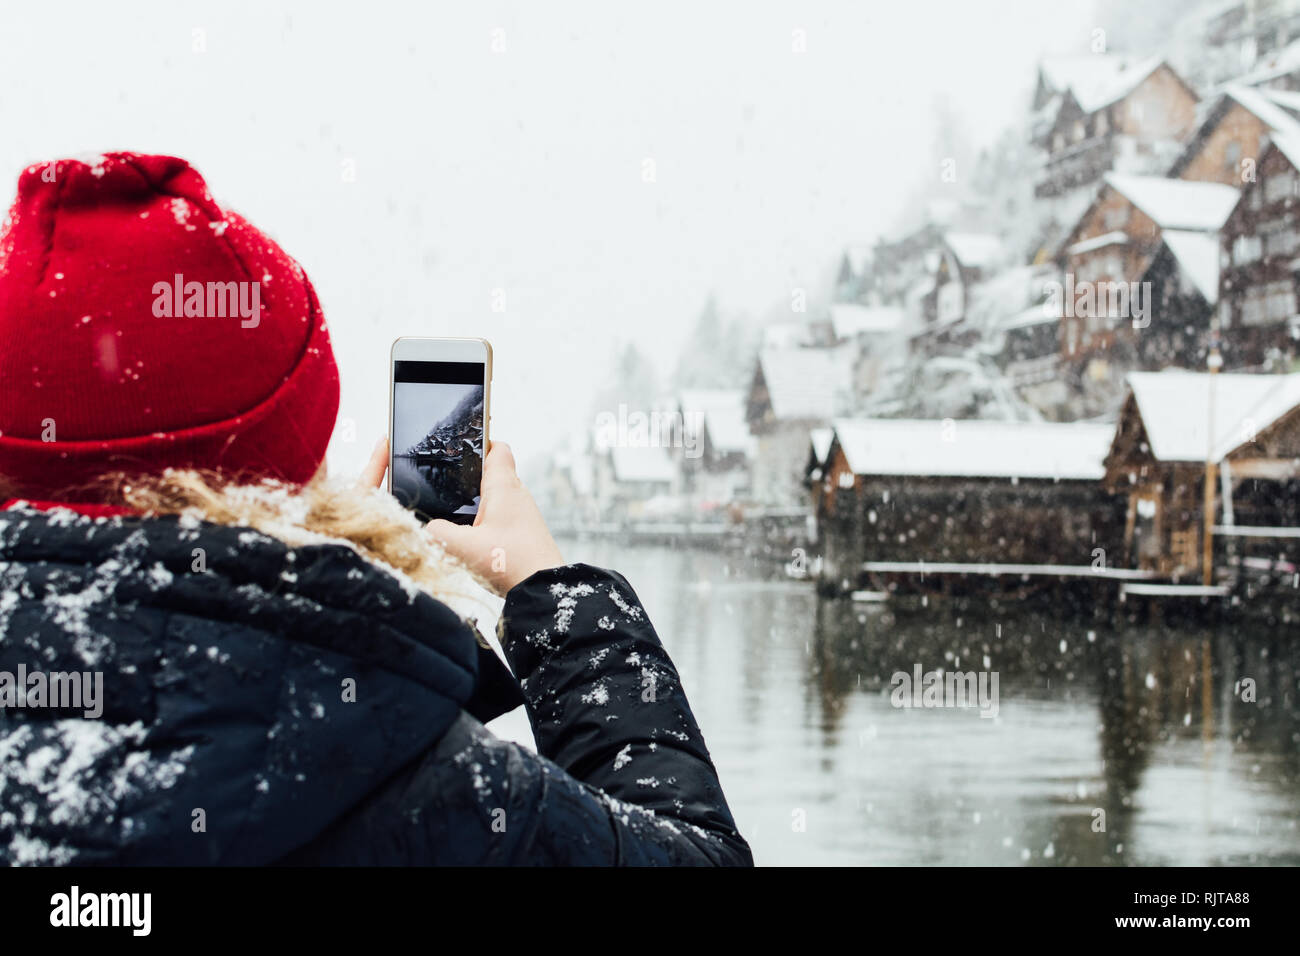 Woman in red hat prendre photo de lac de Hallstatt vieille ville pendant une tempête de neige, en Autriche. Banque D'Images